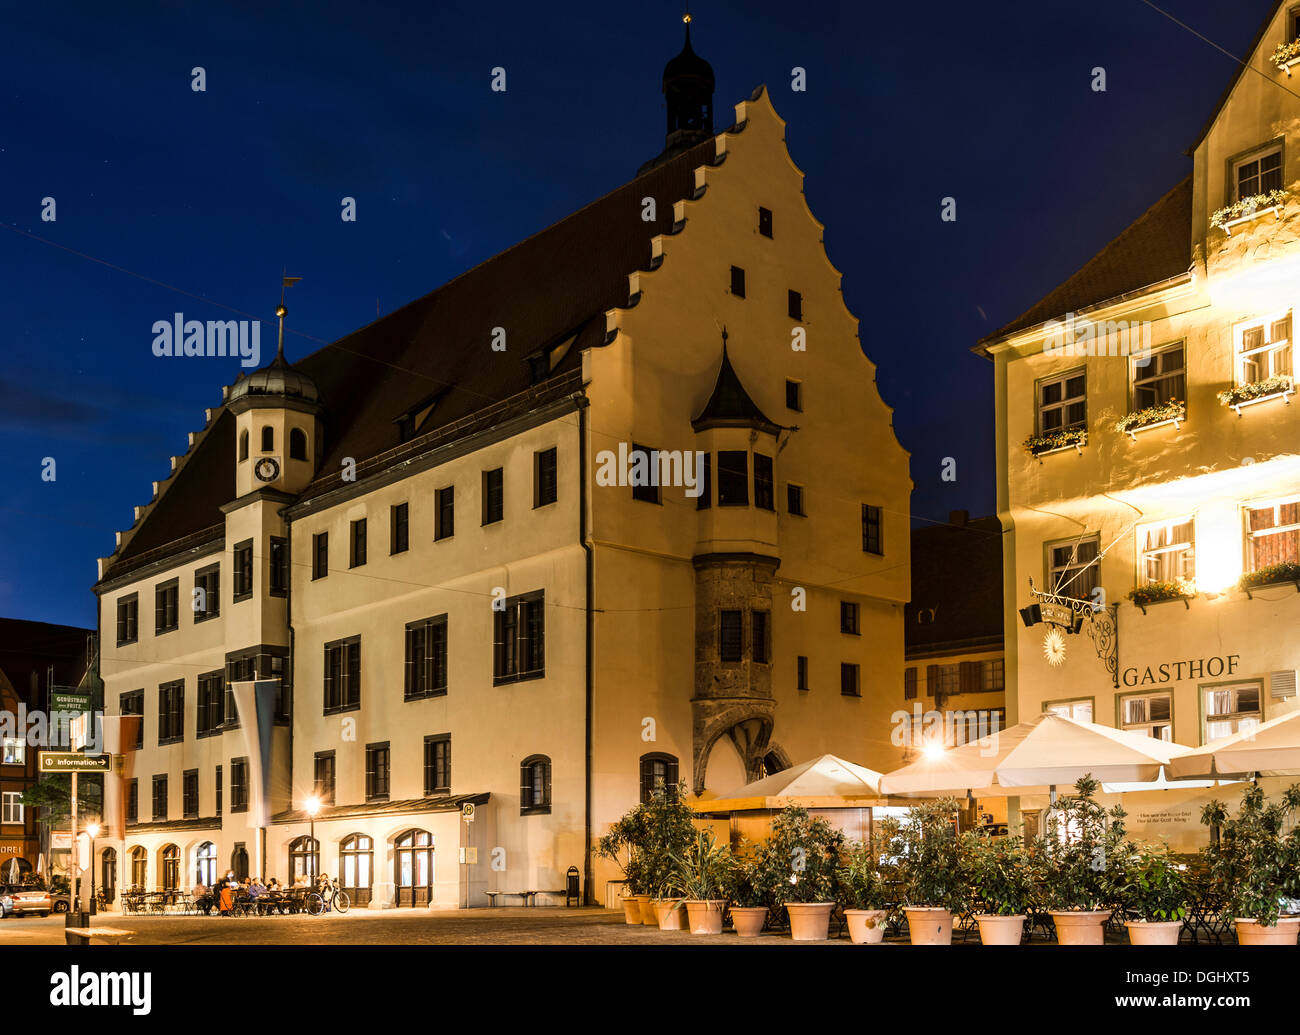 Rathaus in Nacht, historische Mitte, Nördlingen, Bayern, Deutschland Stockfoto